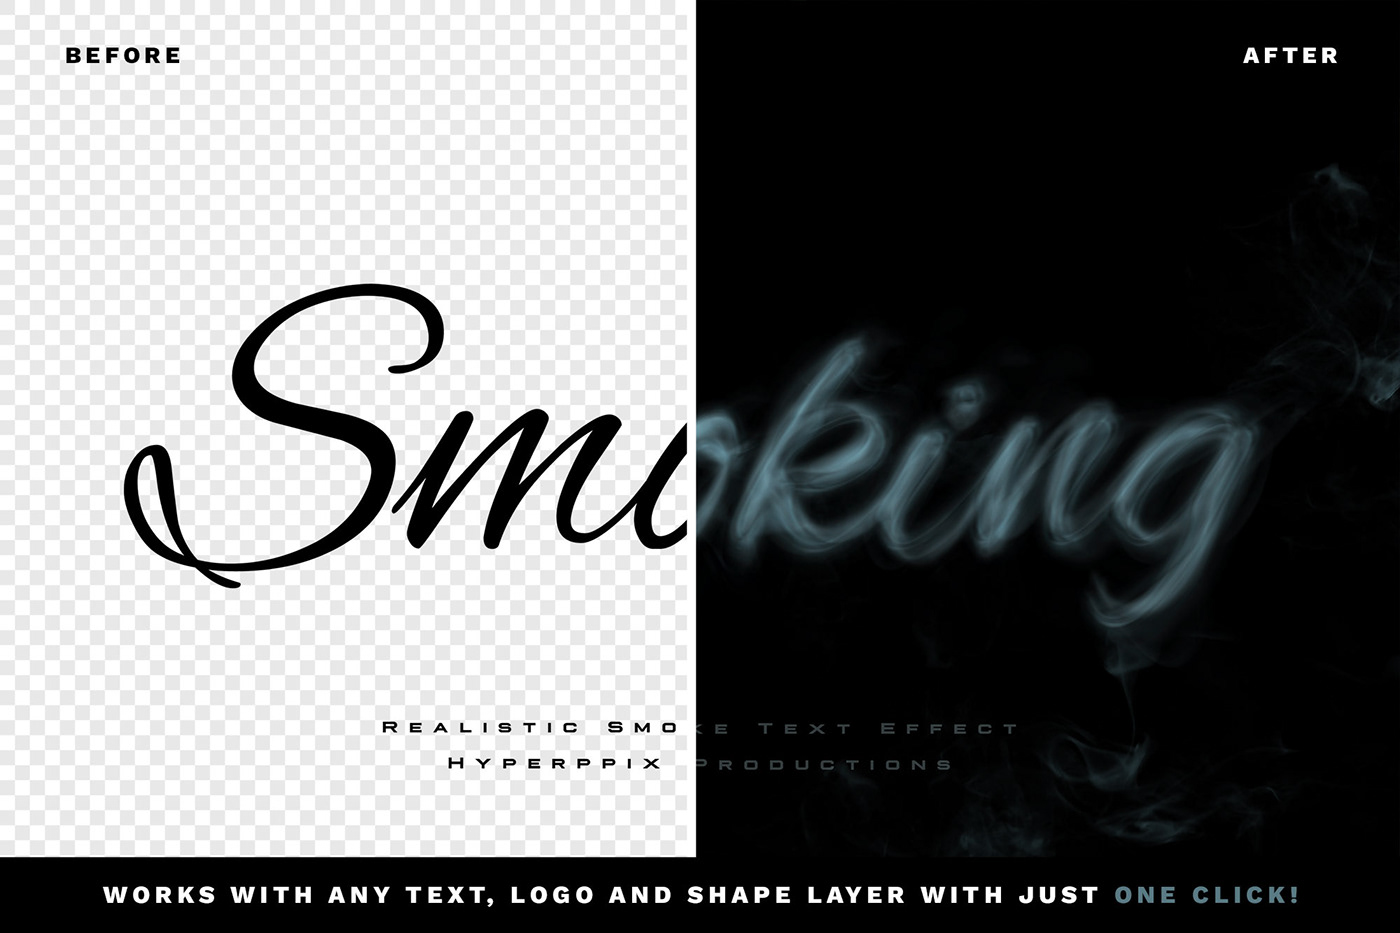 高质量迷幻鬼魅逼真的烟雾字体特效PSD模板素材 Realistic Smoke Text Effect 图片素材 第2张